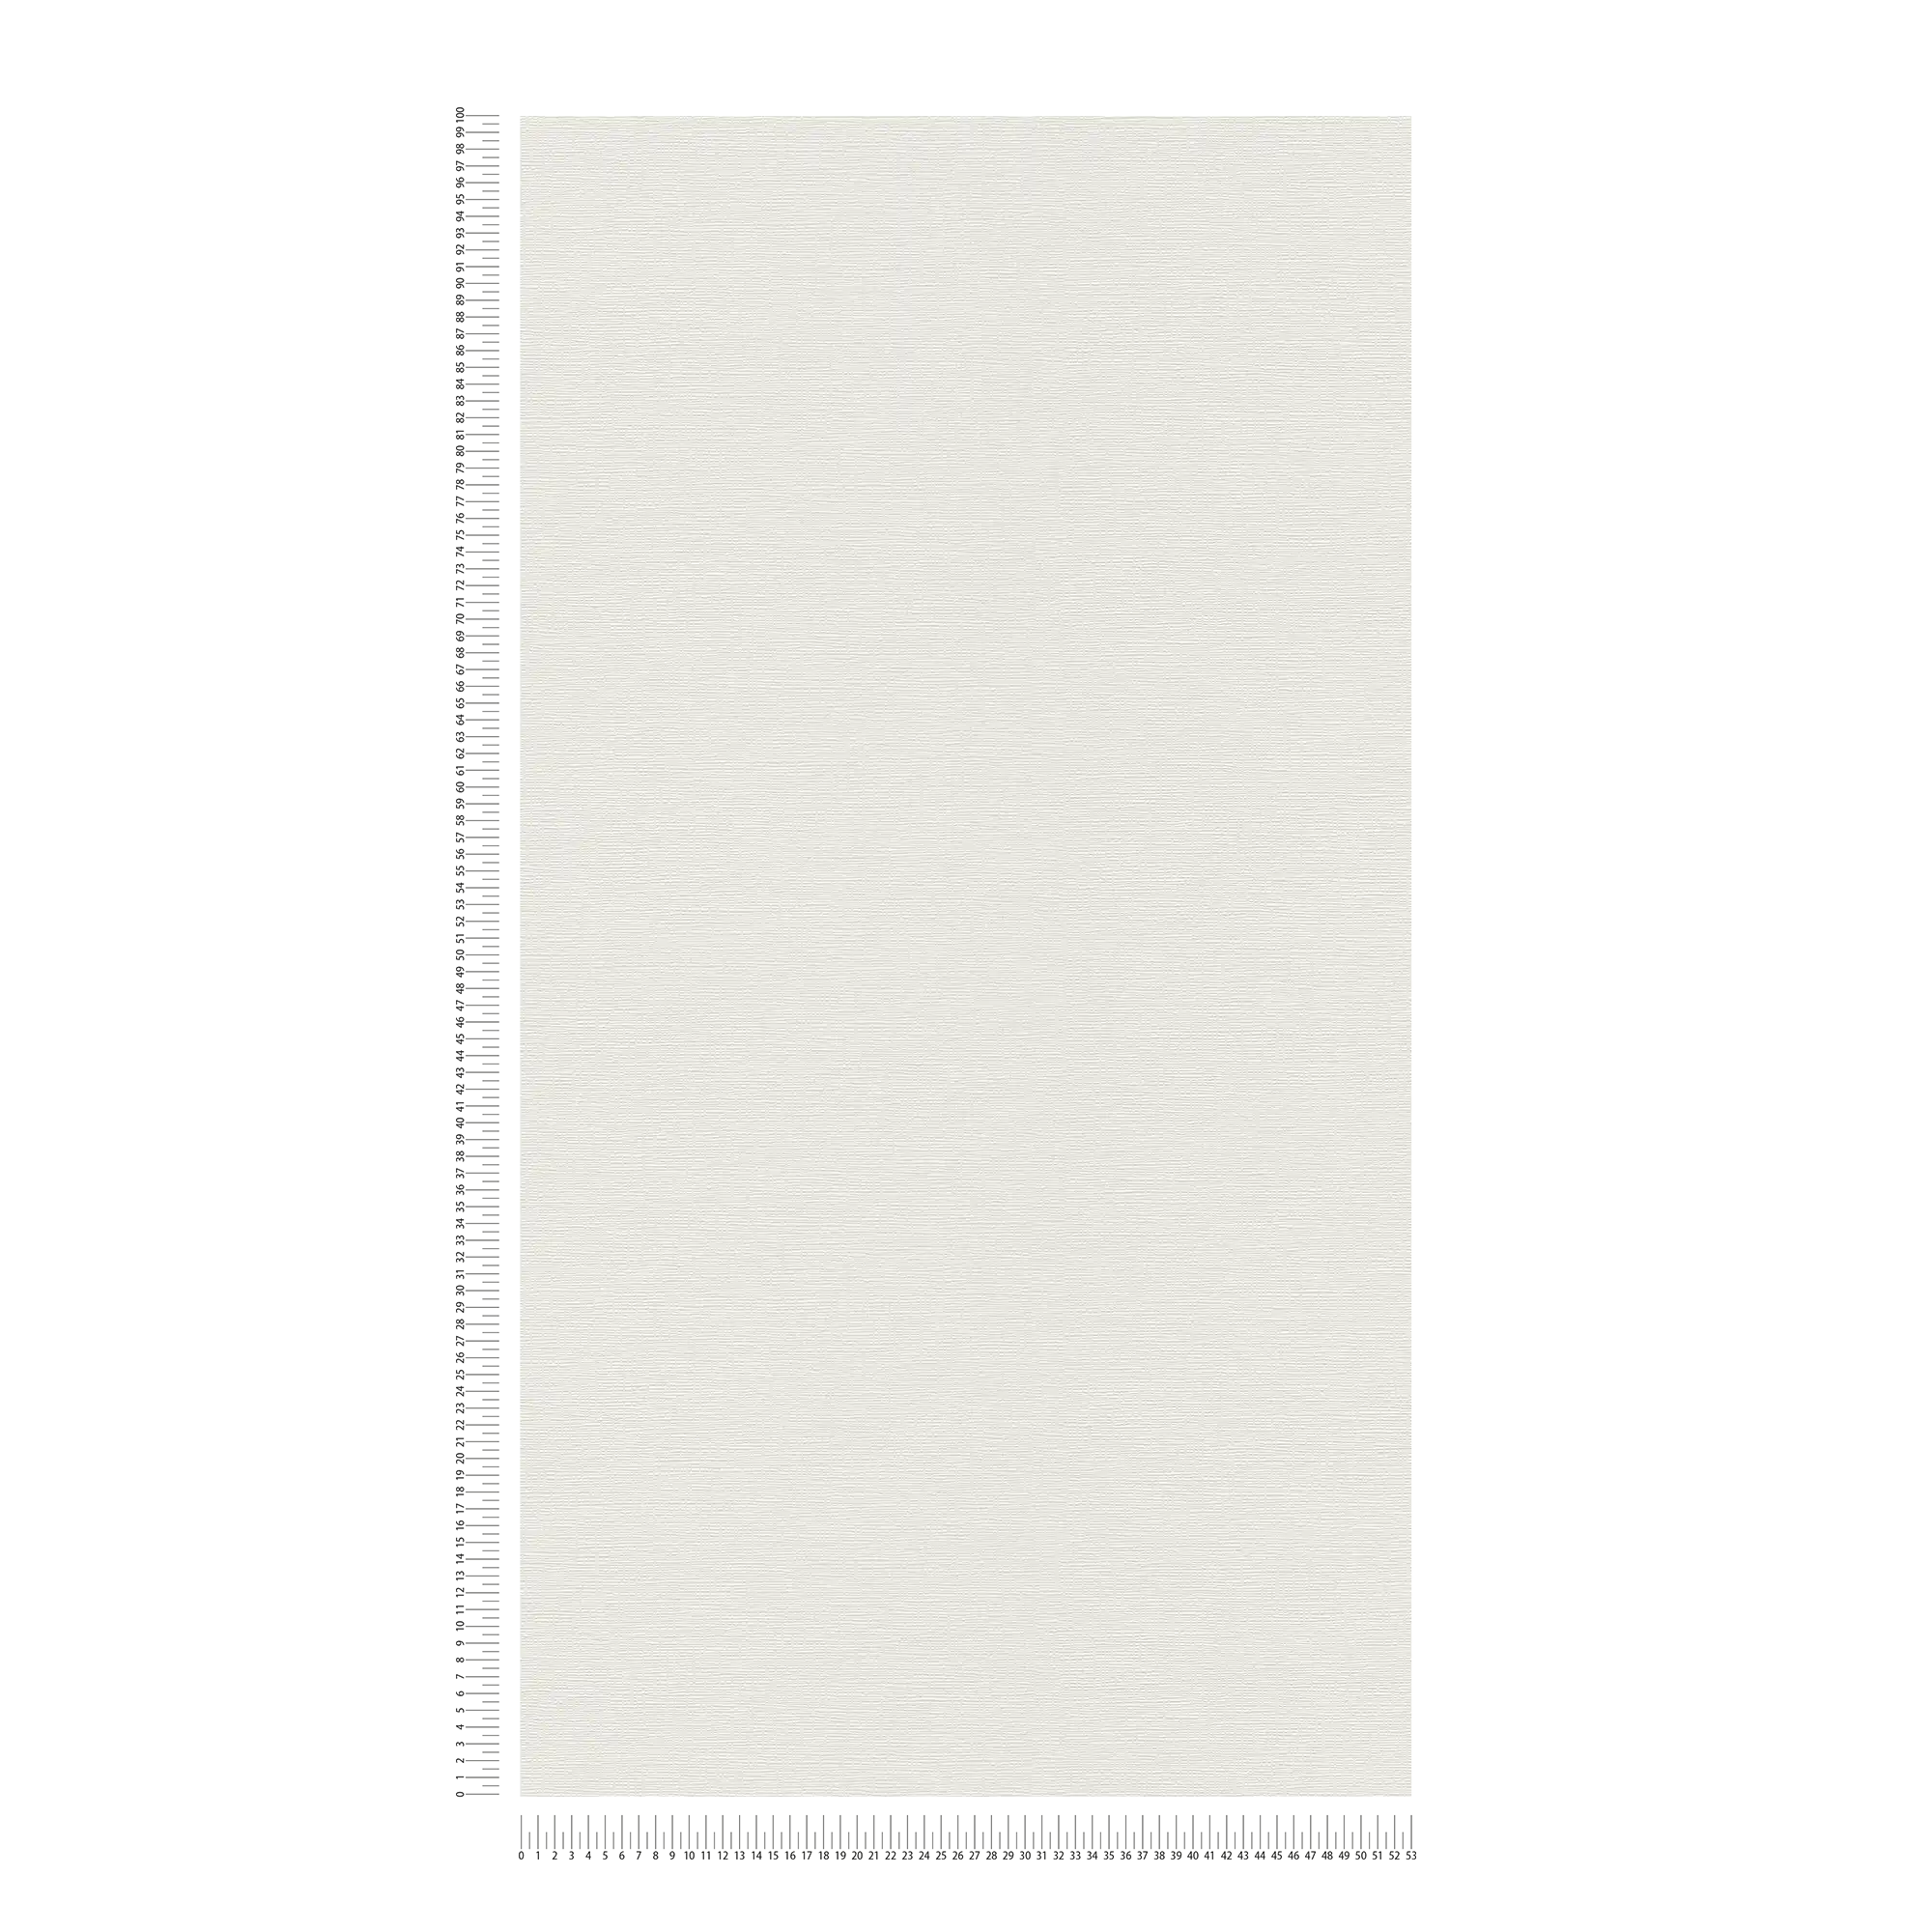             Papier peint blanc uni structuré au design rétro
        